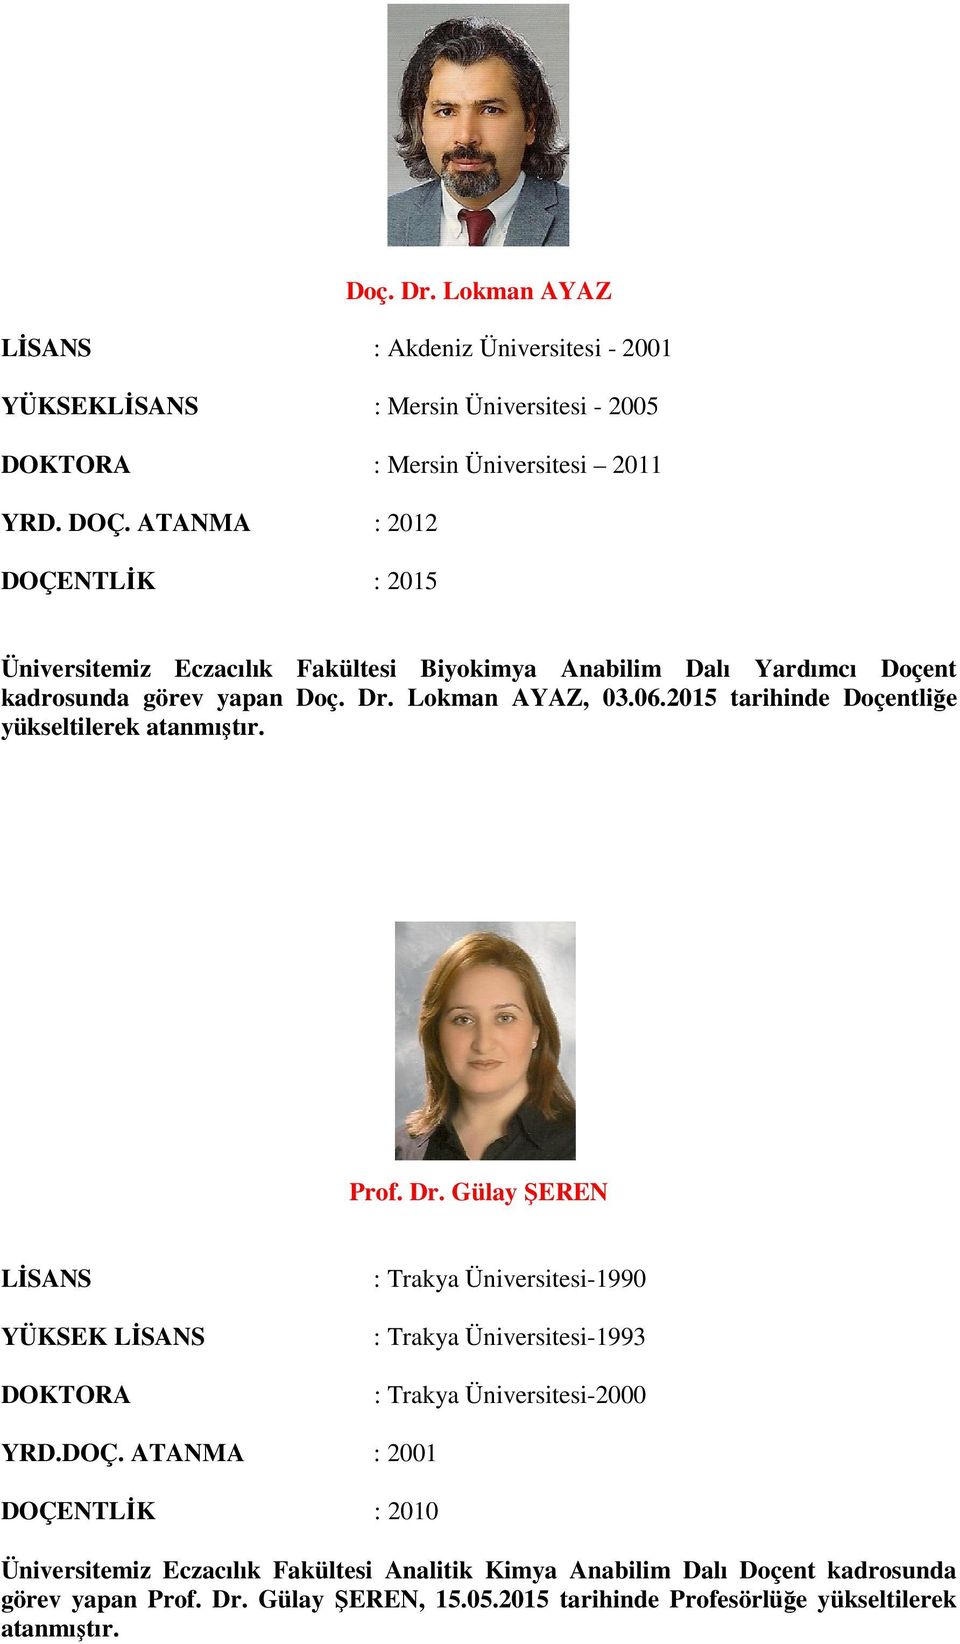 2015 tarihinde Doçentliğe Prof. Dr. Gülay ŞEREN YÜKSEK DOKTORA : Trakya Üniversitesi-1990 : Trakya Üniversitesi-1993 : Trakya Üniversitesi-2000 YRD.DOÇ.